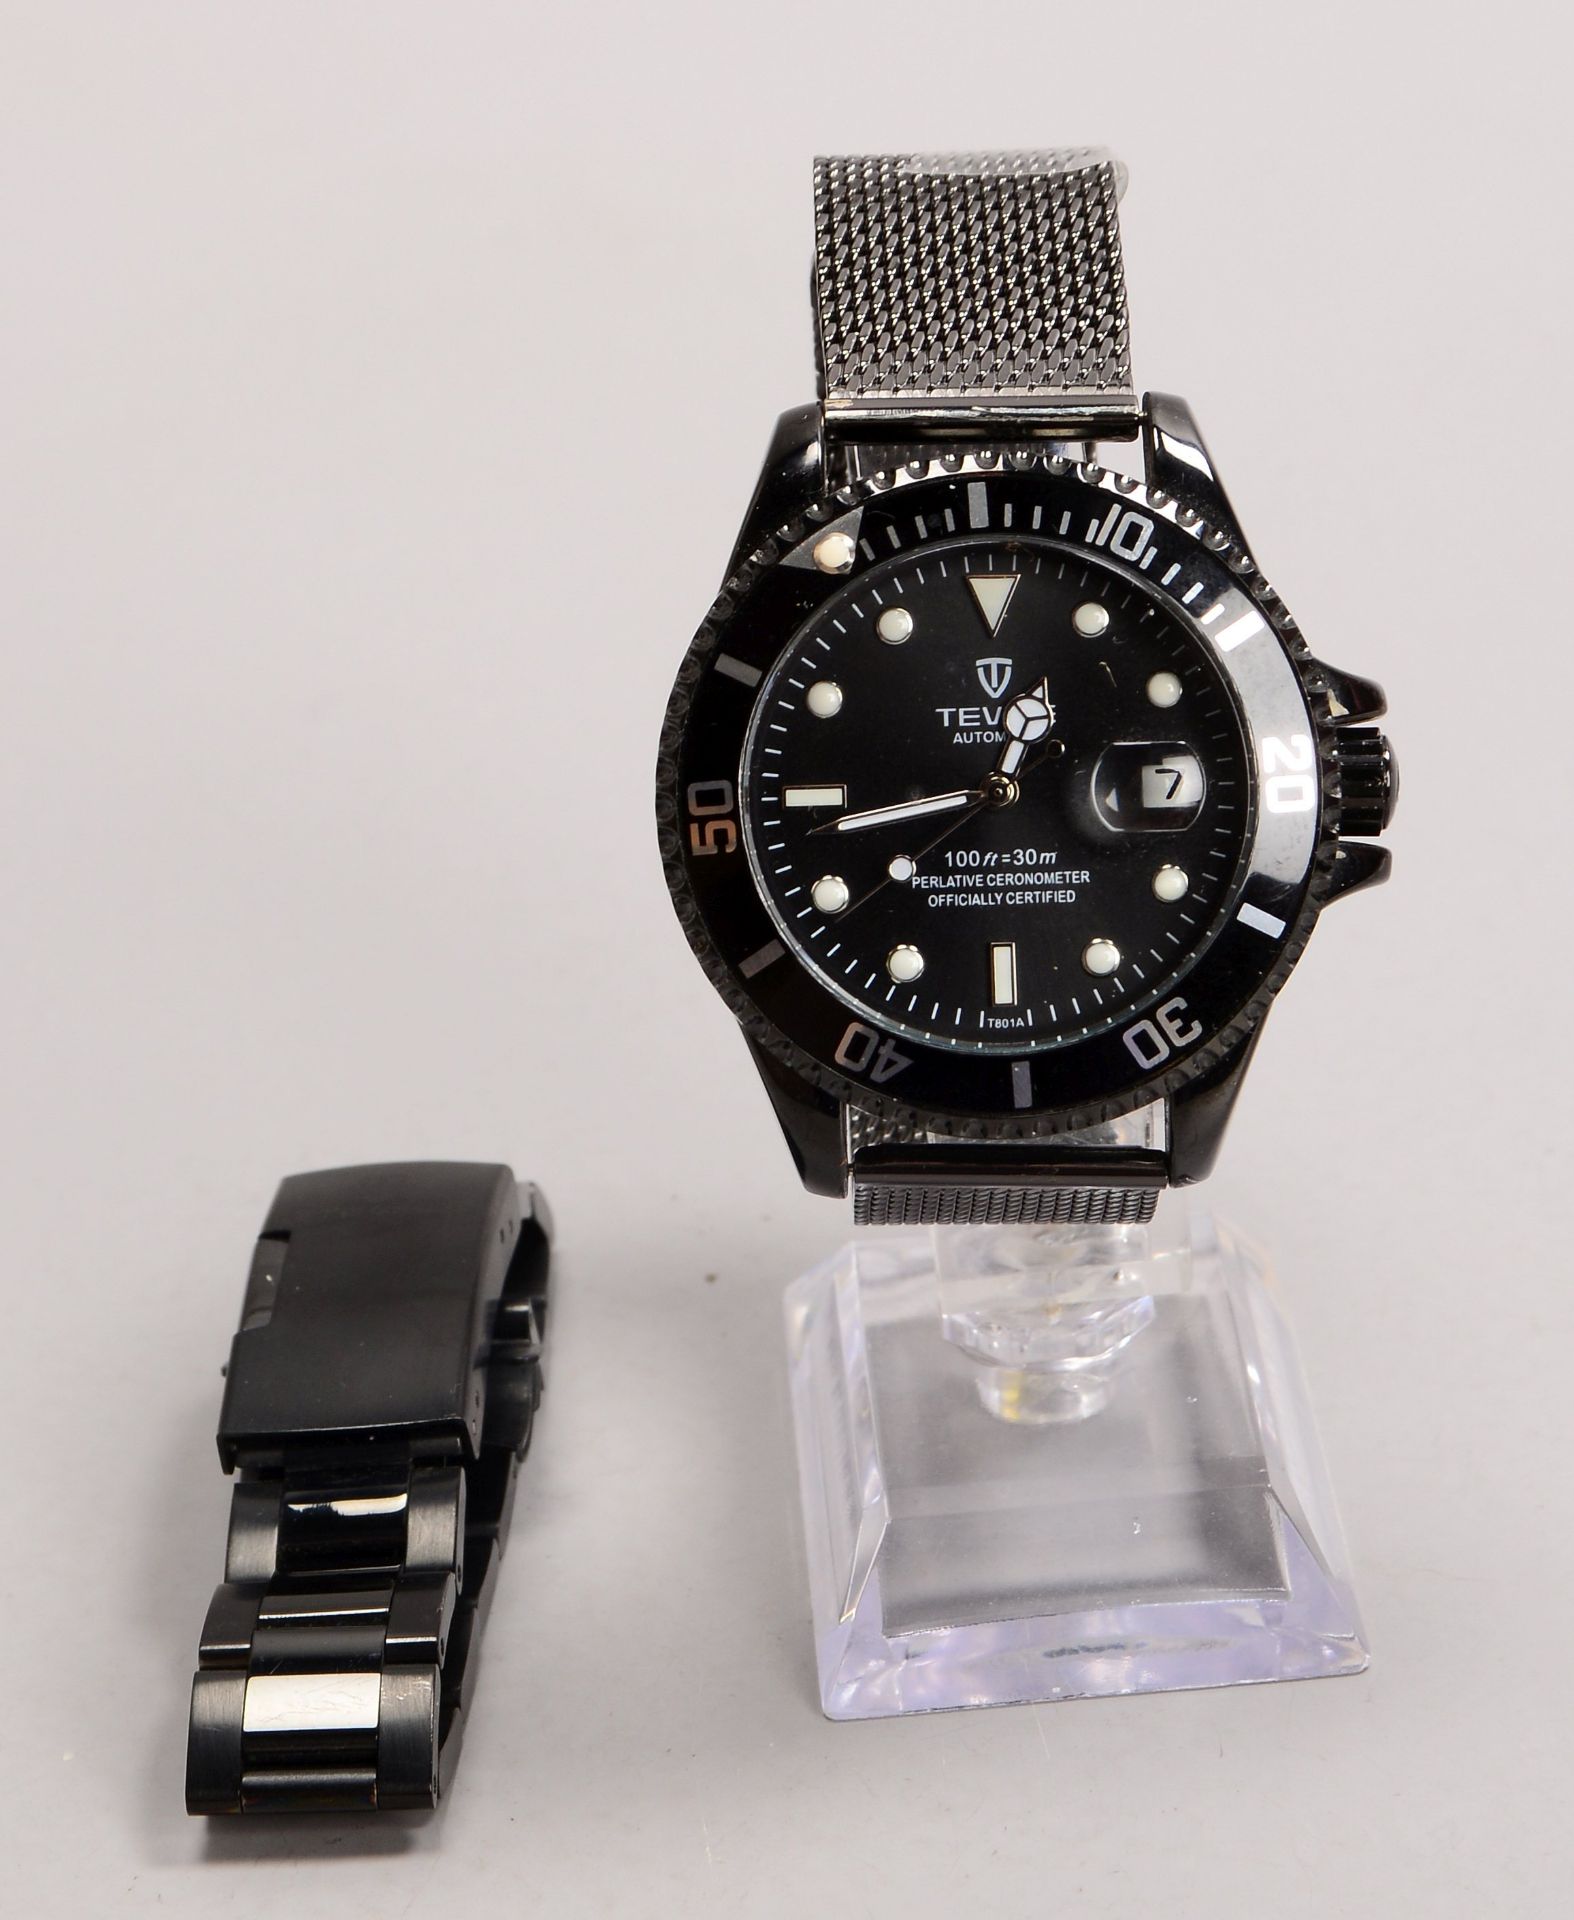 Unisex-Armbanduhr, 'Teuise', Automatik, mit 2x Stahlarmbändern, in original Uhrenbox; Damen- und Her